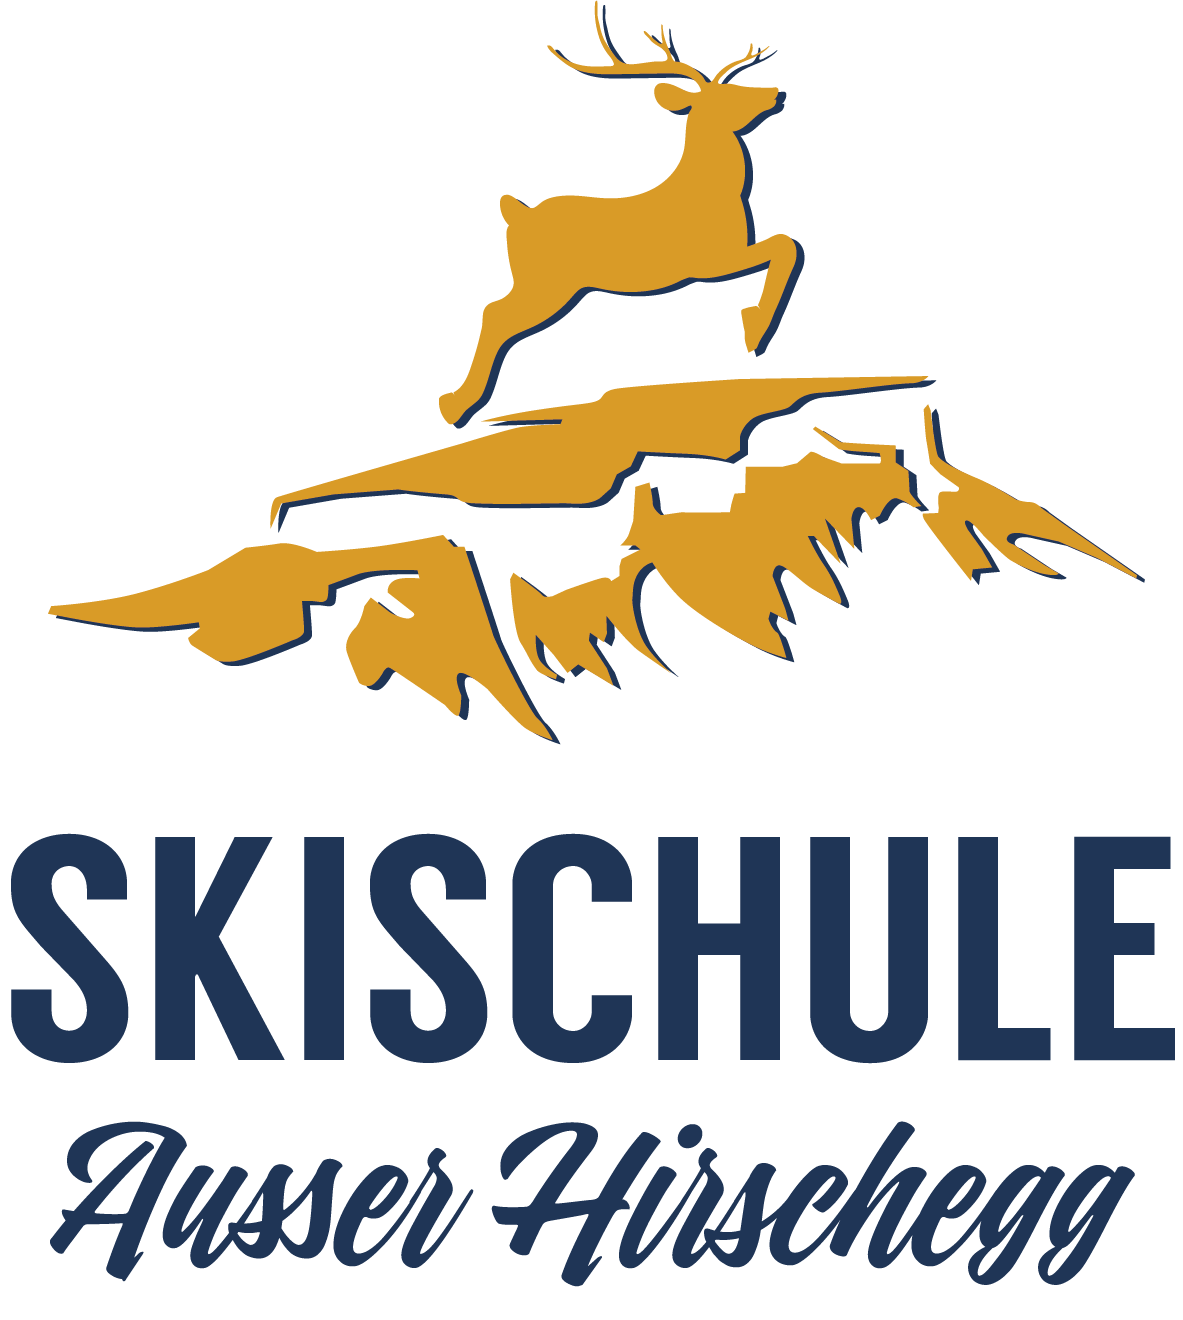 Die Skischule Ausser Hirschegg